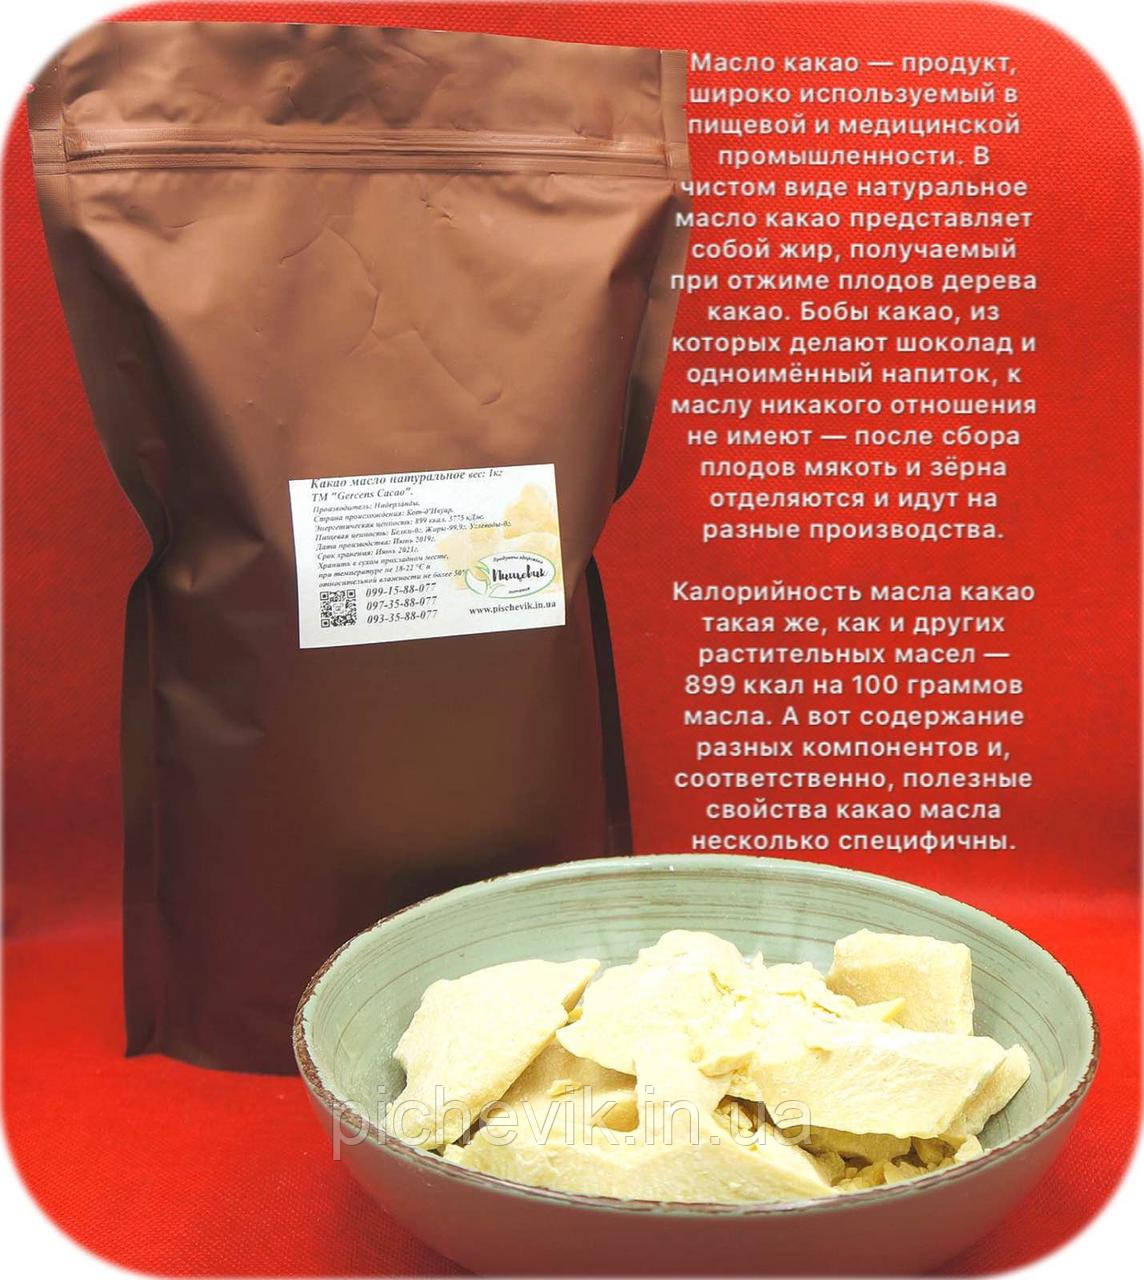 Какао масло натуральне (Нідерланди) ТМ Gerkens Cacao вага:250грамм.